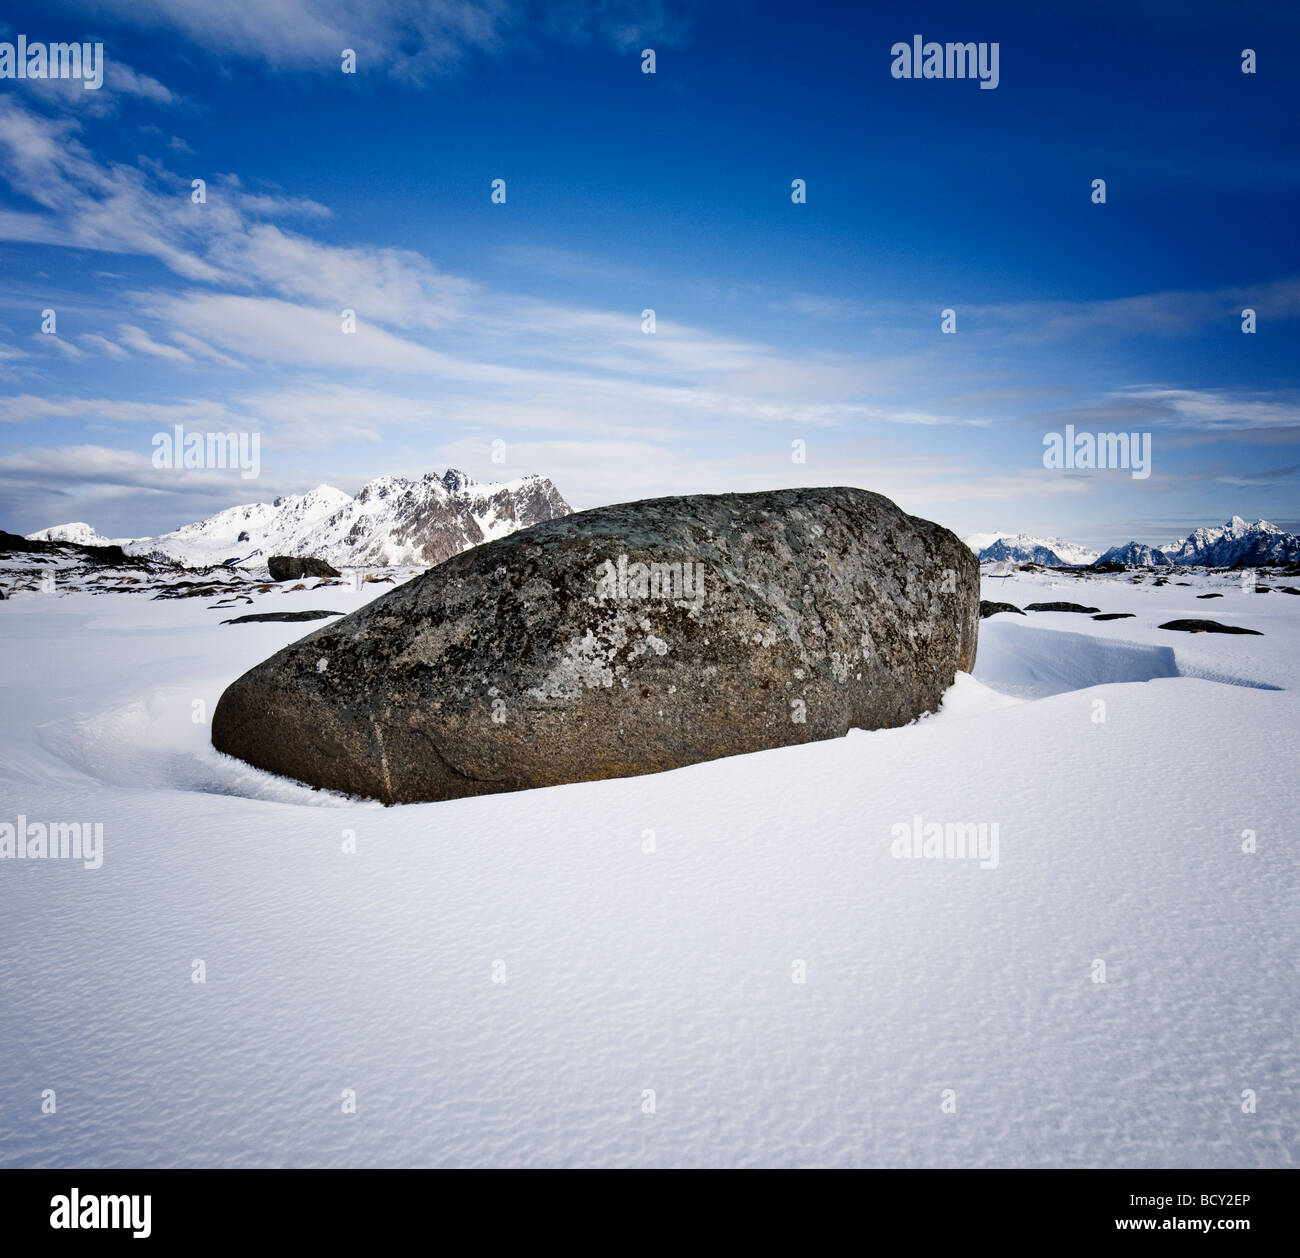 Large boulder in snow covered winter landscape, Near Stamsund, Vestvågøy, Lofoten islands, Norway Stock Photo